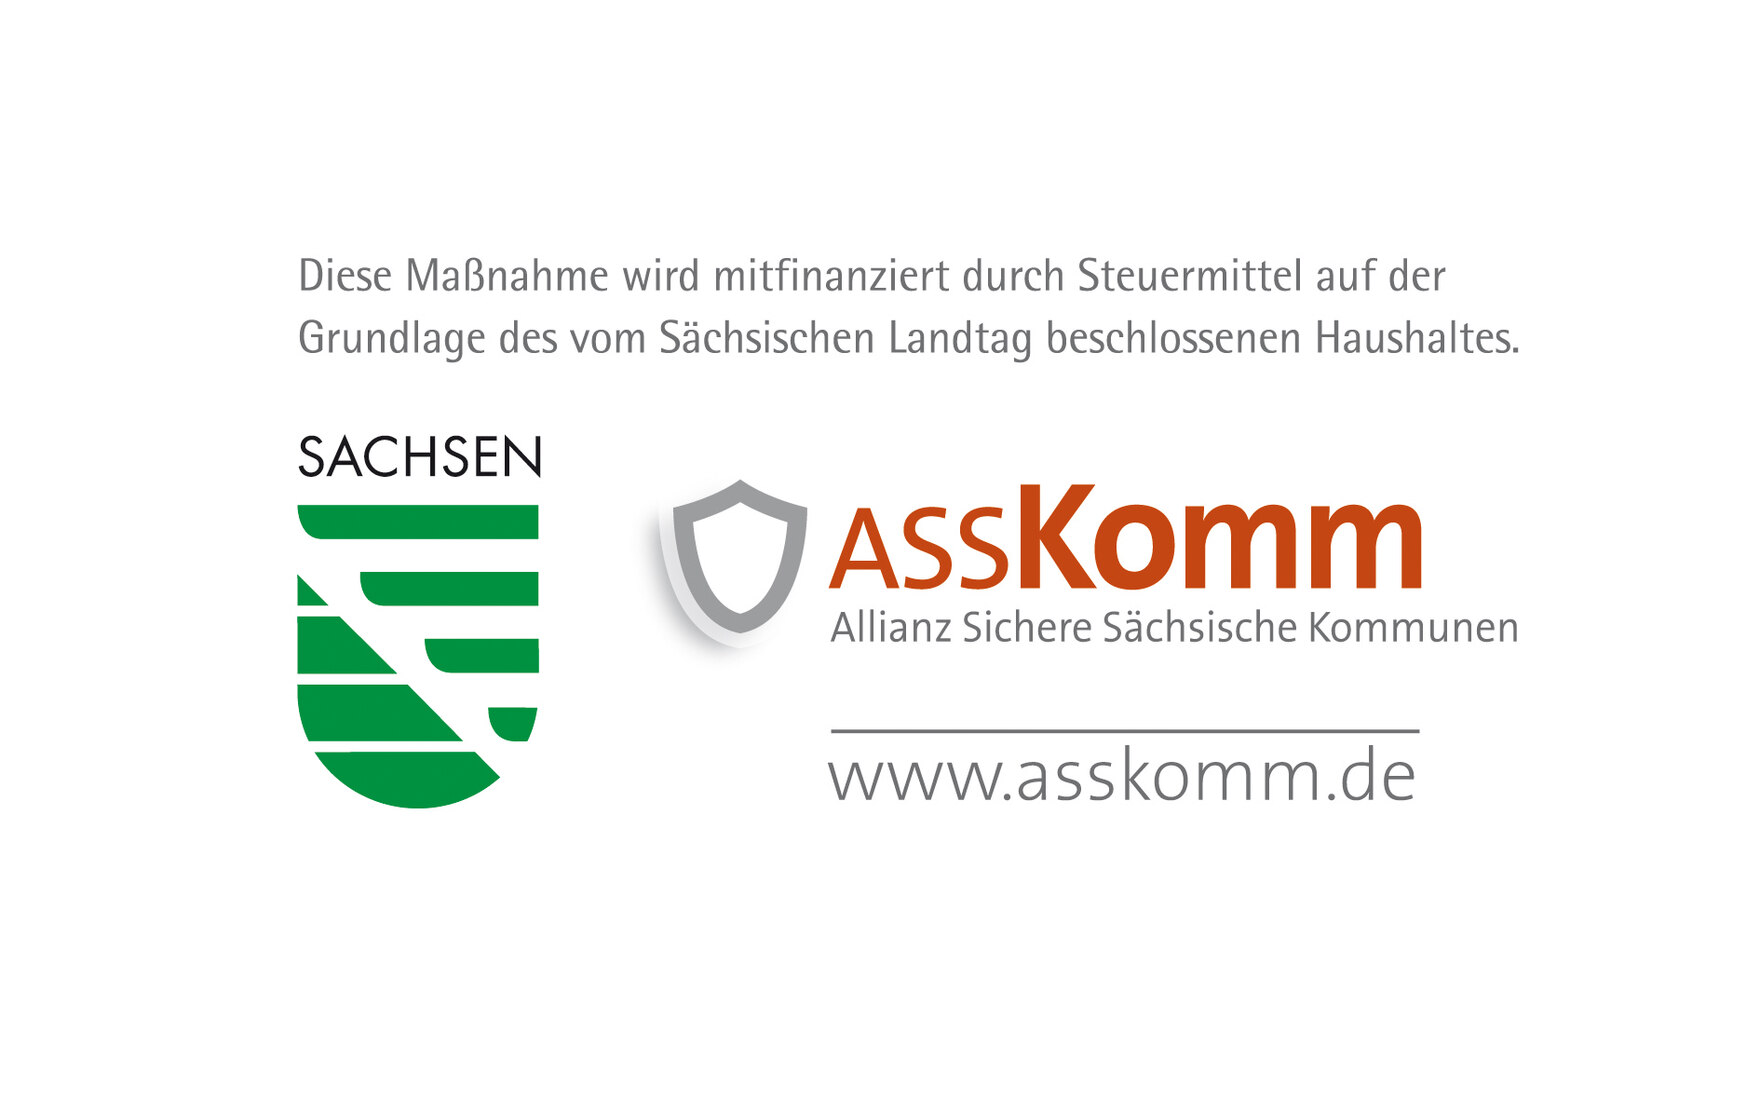 Fördersignets mit ASSKomm LPR Logos sowie dem Hinweis das die Finanzierung über den Freistaat Sachsen veranlasst wird